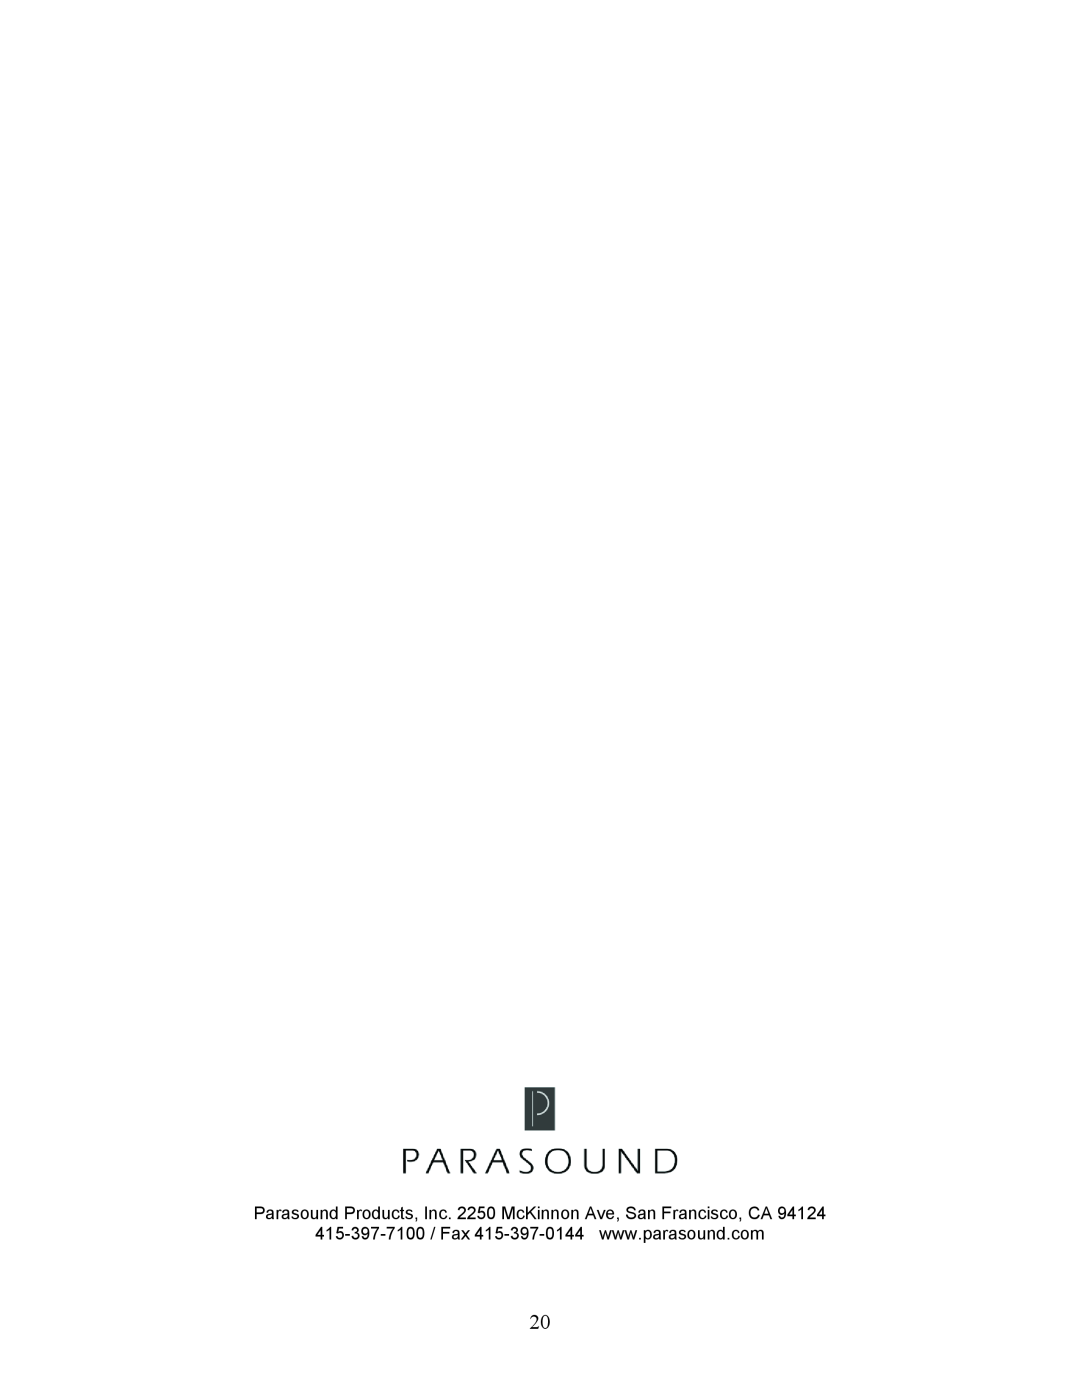 Parasound A 31 manual 